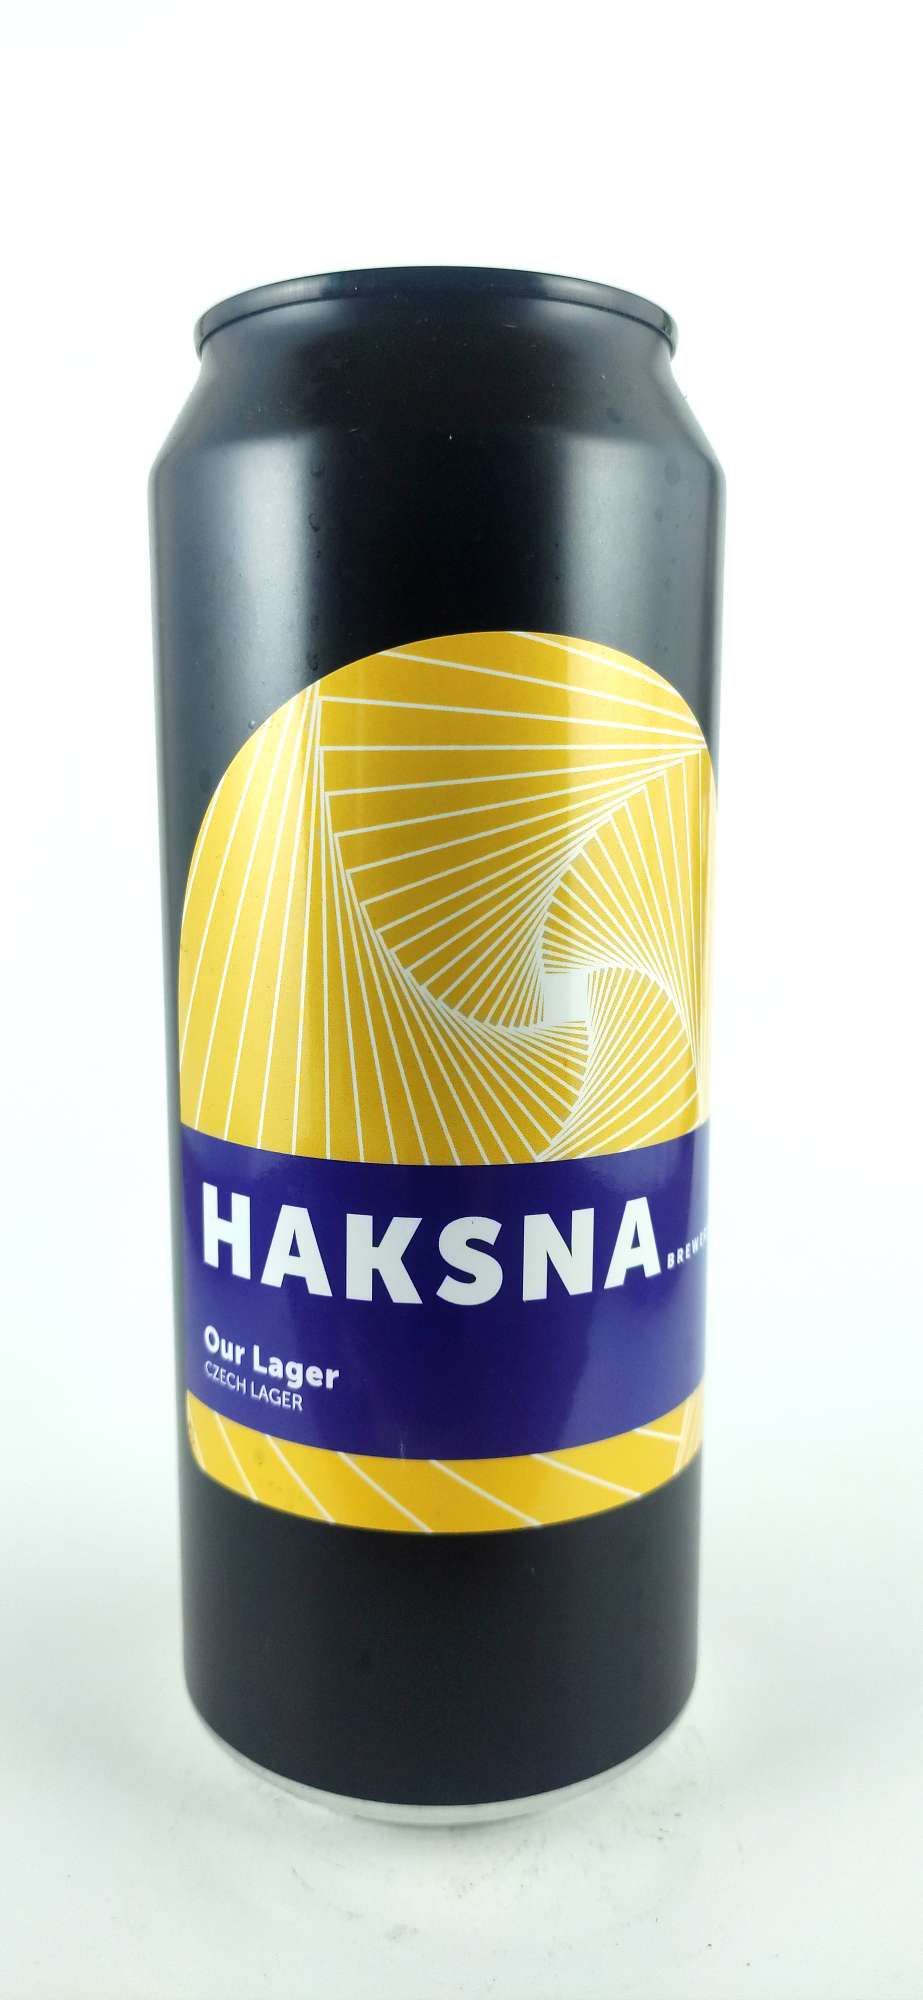 Haksna Our Lager Czech lager 11°